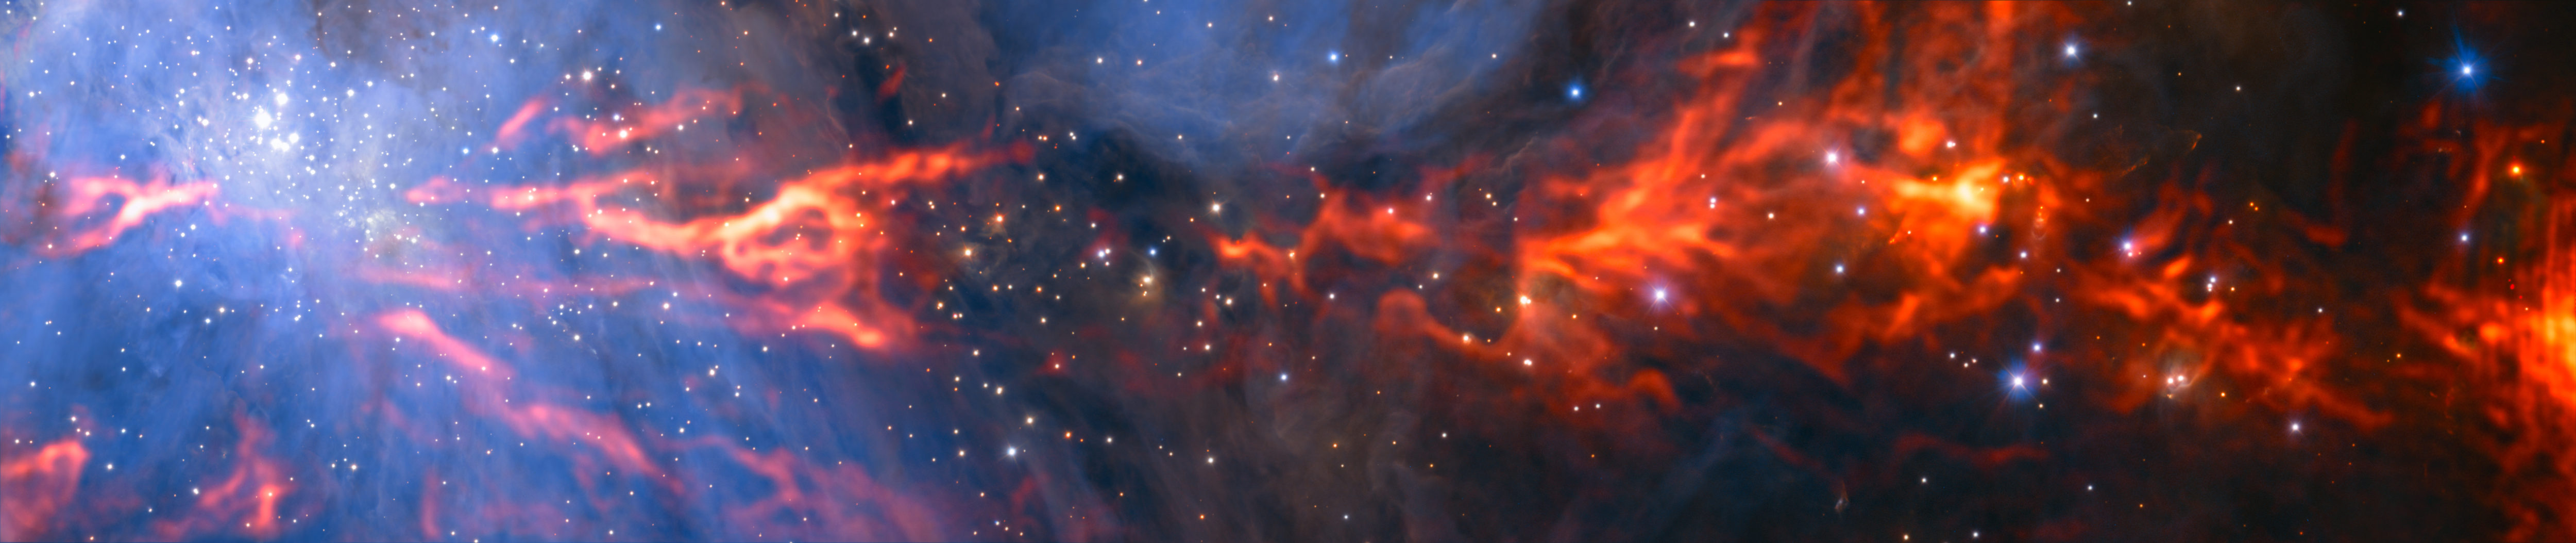 Esta espectacular e inusual imagen muestra parte de la famosa nebulosa de Orión, una región de formación estelar que se encuentra a unos 1350 años luz de la Tierra. Combina un mosaico de imágenes en longitud de onda milimétrica obtenidas por el radiotelescopio ALMA (Atacama Large Millimeter/submillimeter Array) y el telescopio IRAM de 30 metros, que se ven en rojo, con una vista infrarroja más conocida, obtenida por el instrumento HAWK-I, instalado en el Very Large Telescope de ESO, y que se muestra en azul. El grupo de estrellas brillantes de color blanco-azulado de la parte superior izquierda es el Cúmulo del Trapecio, formado por estrellas jóvenes calientes de tan solo unos pocos millones de años. Crédito: ESO/H. Drass/ALMA (ESO/NAOJ/NRAO)/A. Hacar